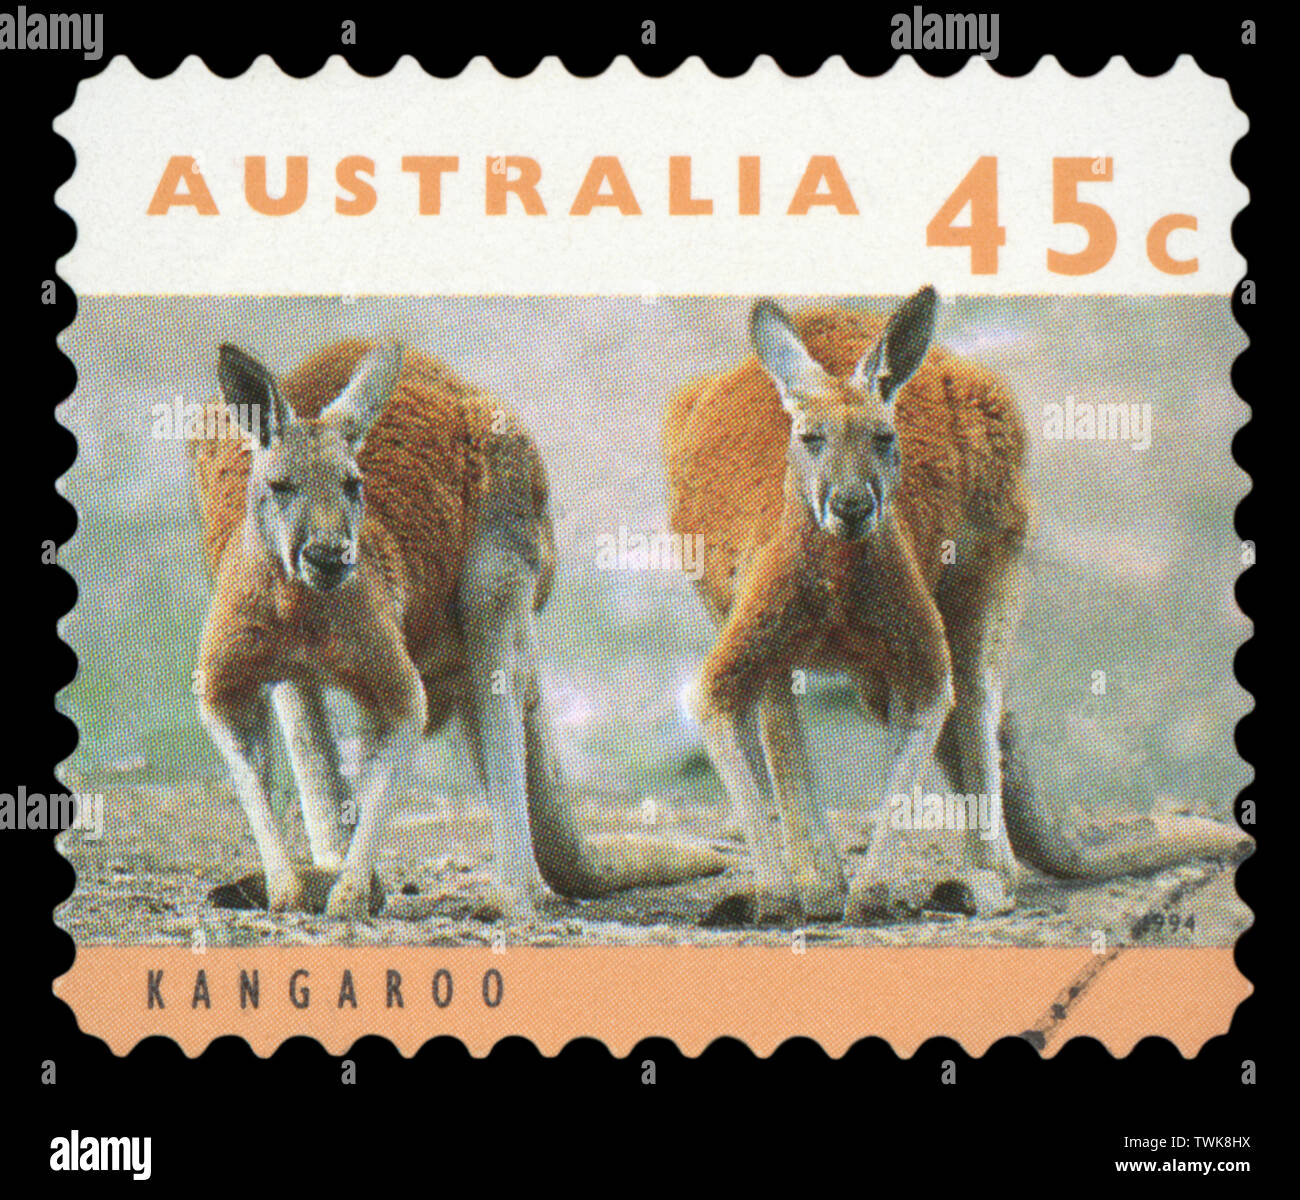 Australien - ca. 1994: einen gebrauchten Briefmarke aus Australien, zeigt ein Bild der Kängurus, circa 1994. Stockfoto